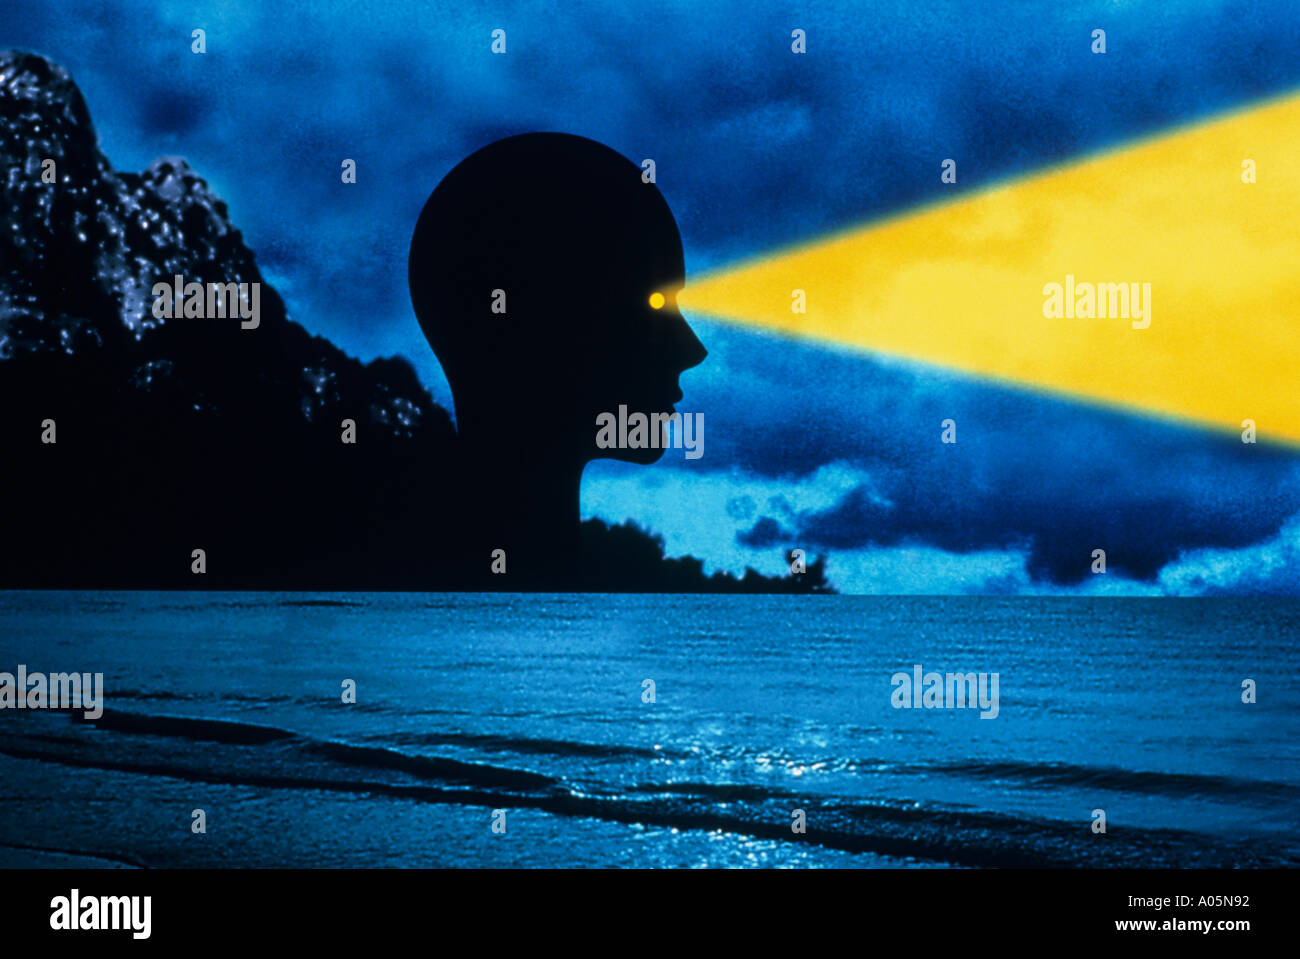 Imagen creada digitalmente el rostro de una persona mirando sobre el mar en la noche con un haz de luz amarilla que sobresale de los ojos Foto de stock